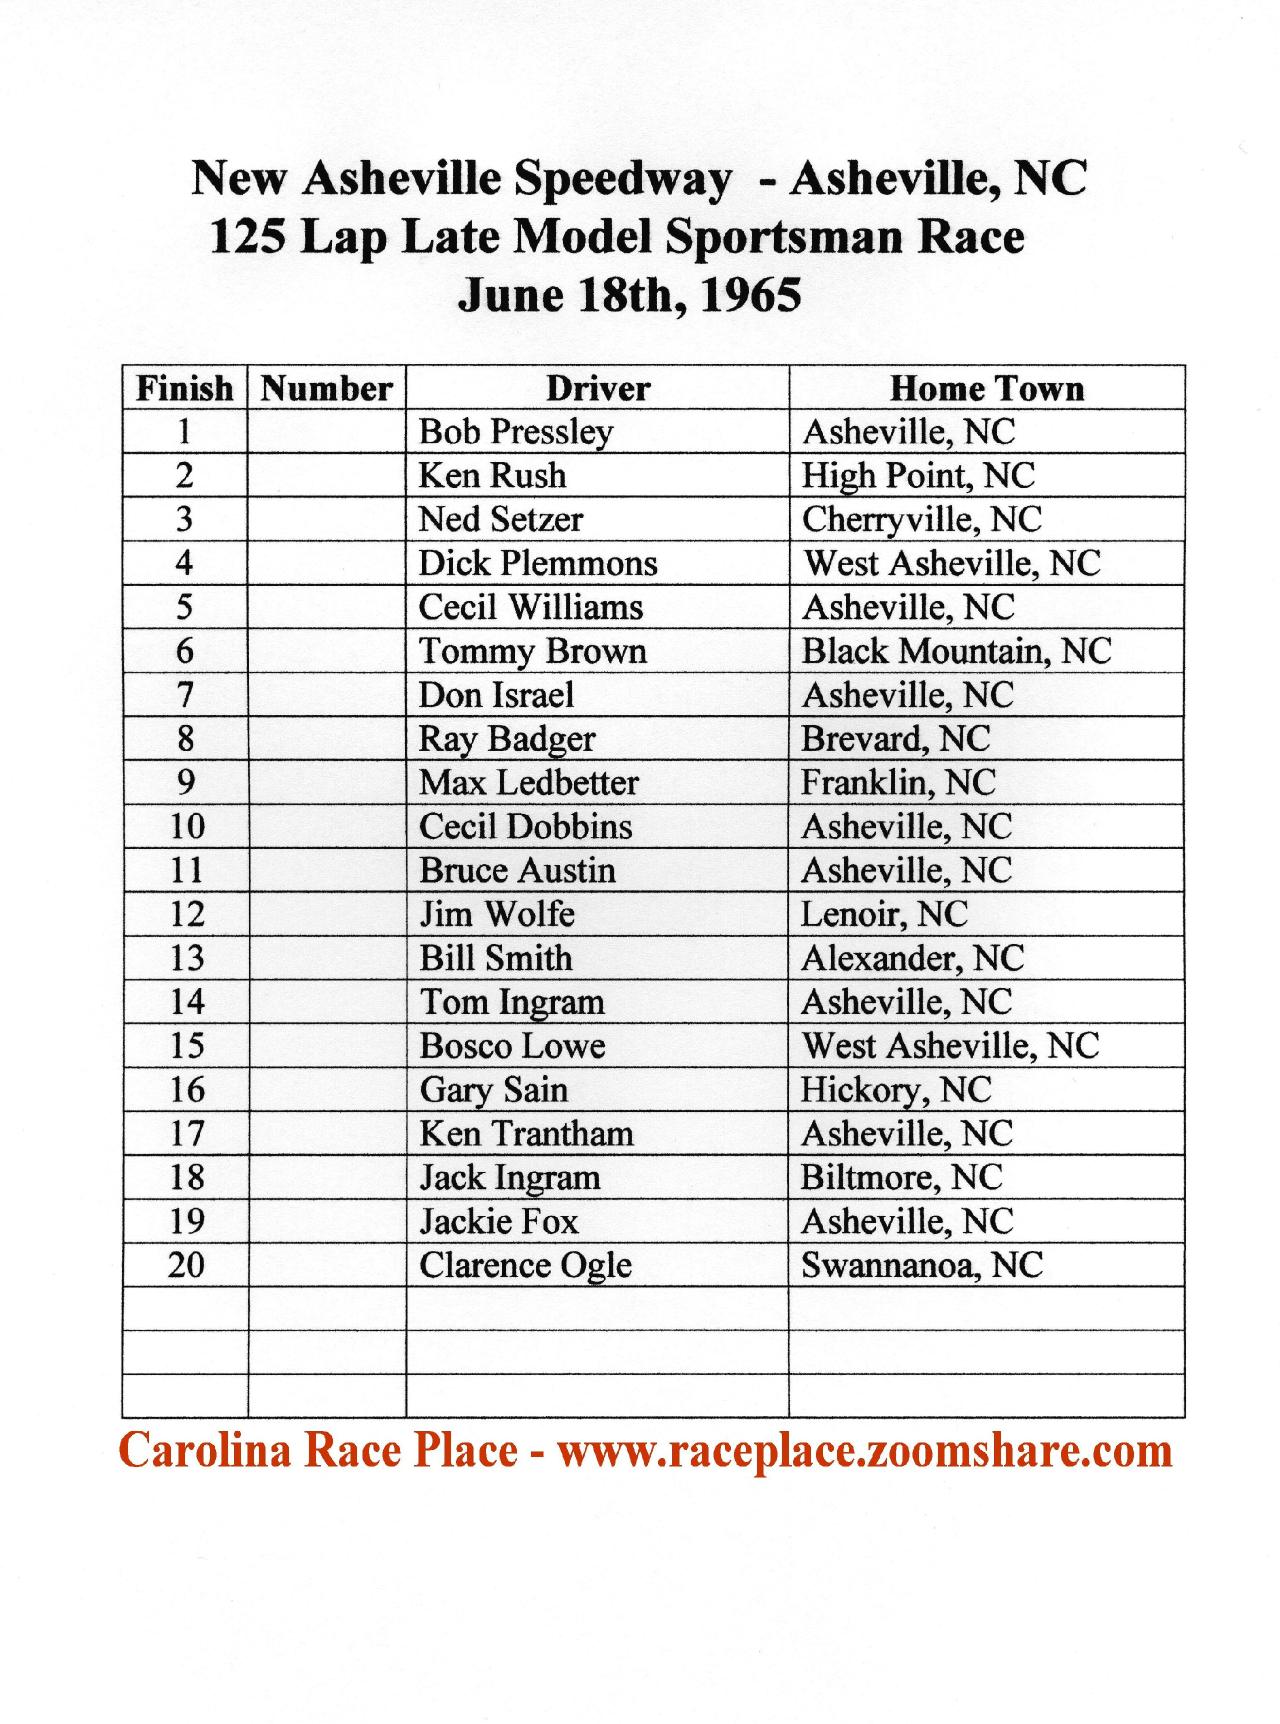 New Asheville Race Results 1965 Gallery Jack Walker